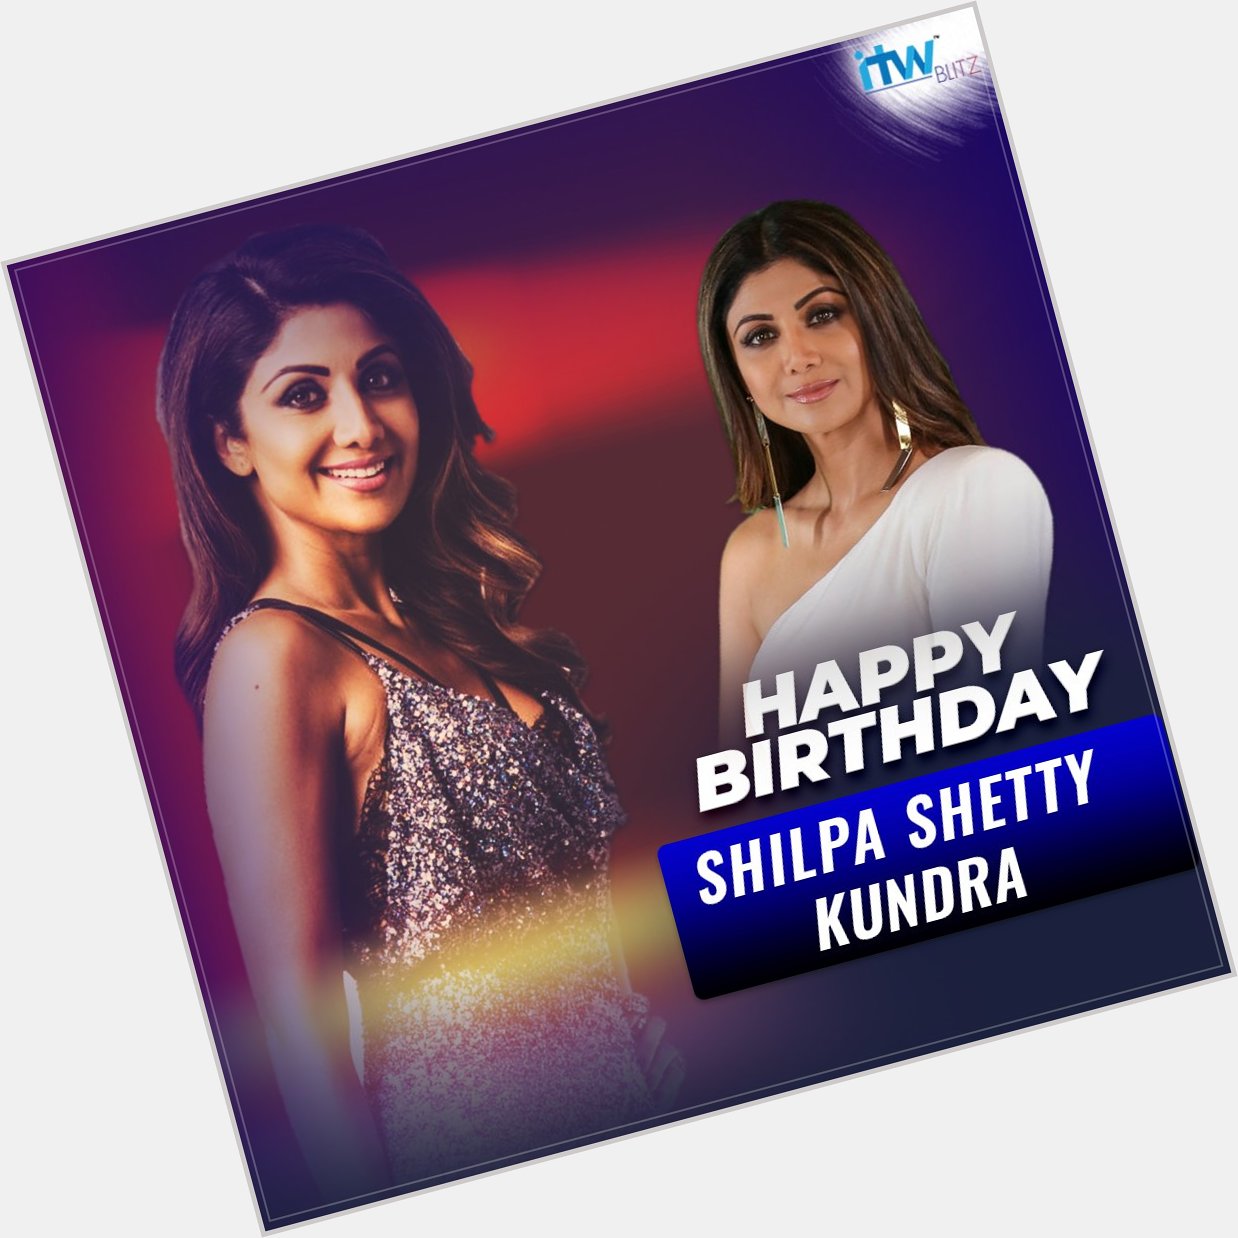 Happy Birthday Shilpa Shetty! 